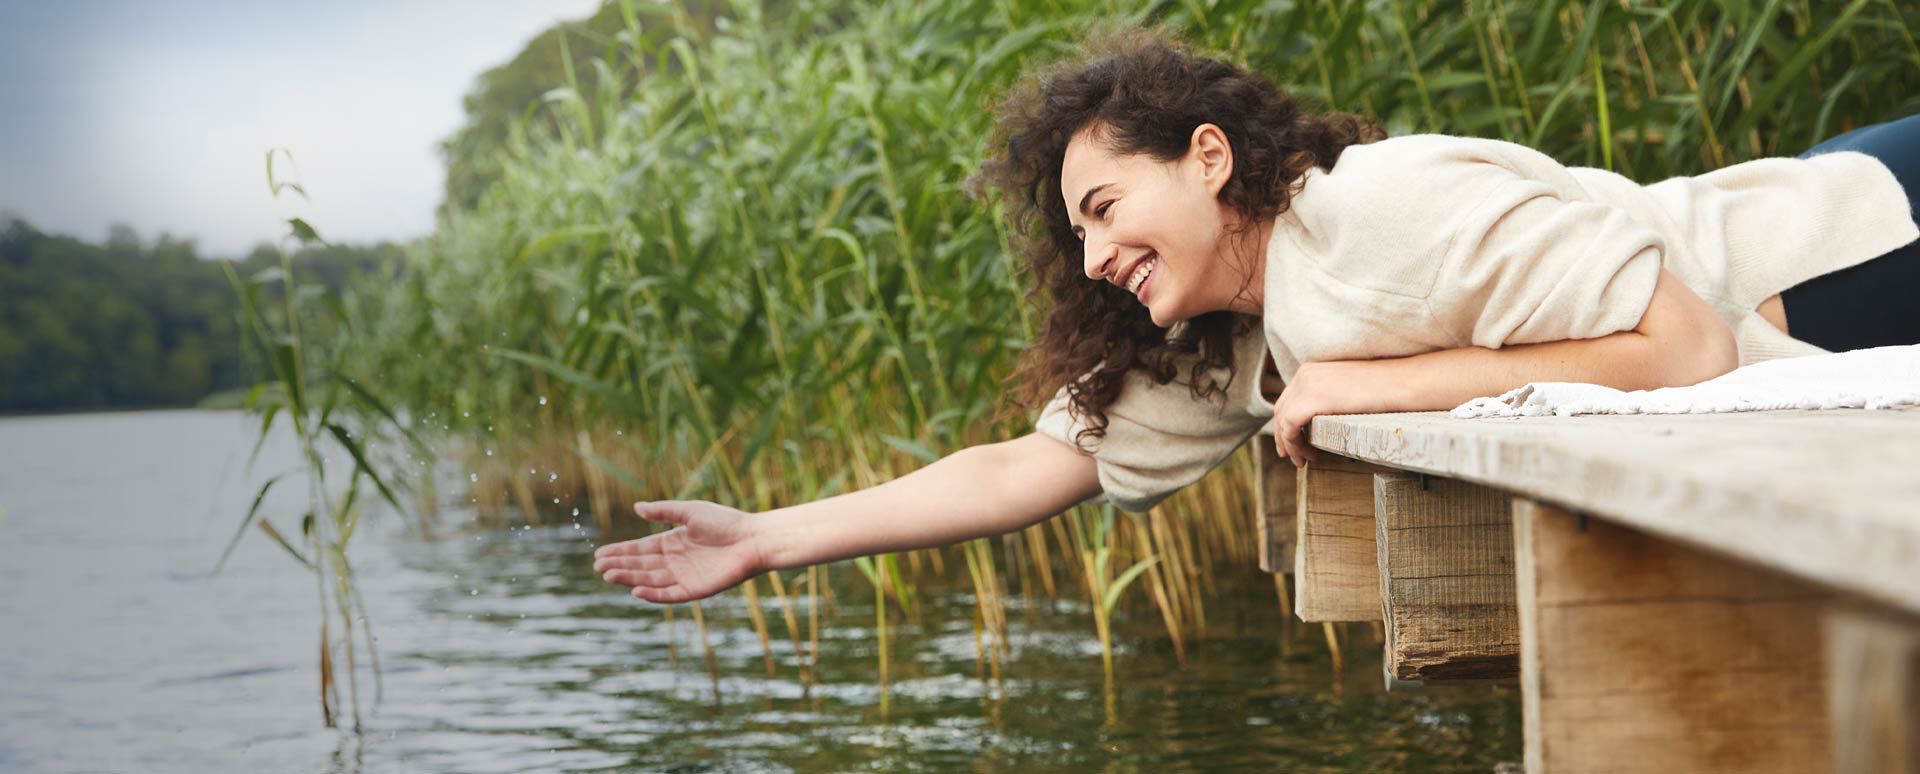 セバスチャン・クナイプの洞察は、かつてないほど今日的なものです。写真では、ある女性が湖の冷たい水を楽しんでいます。